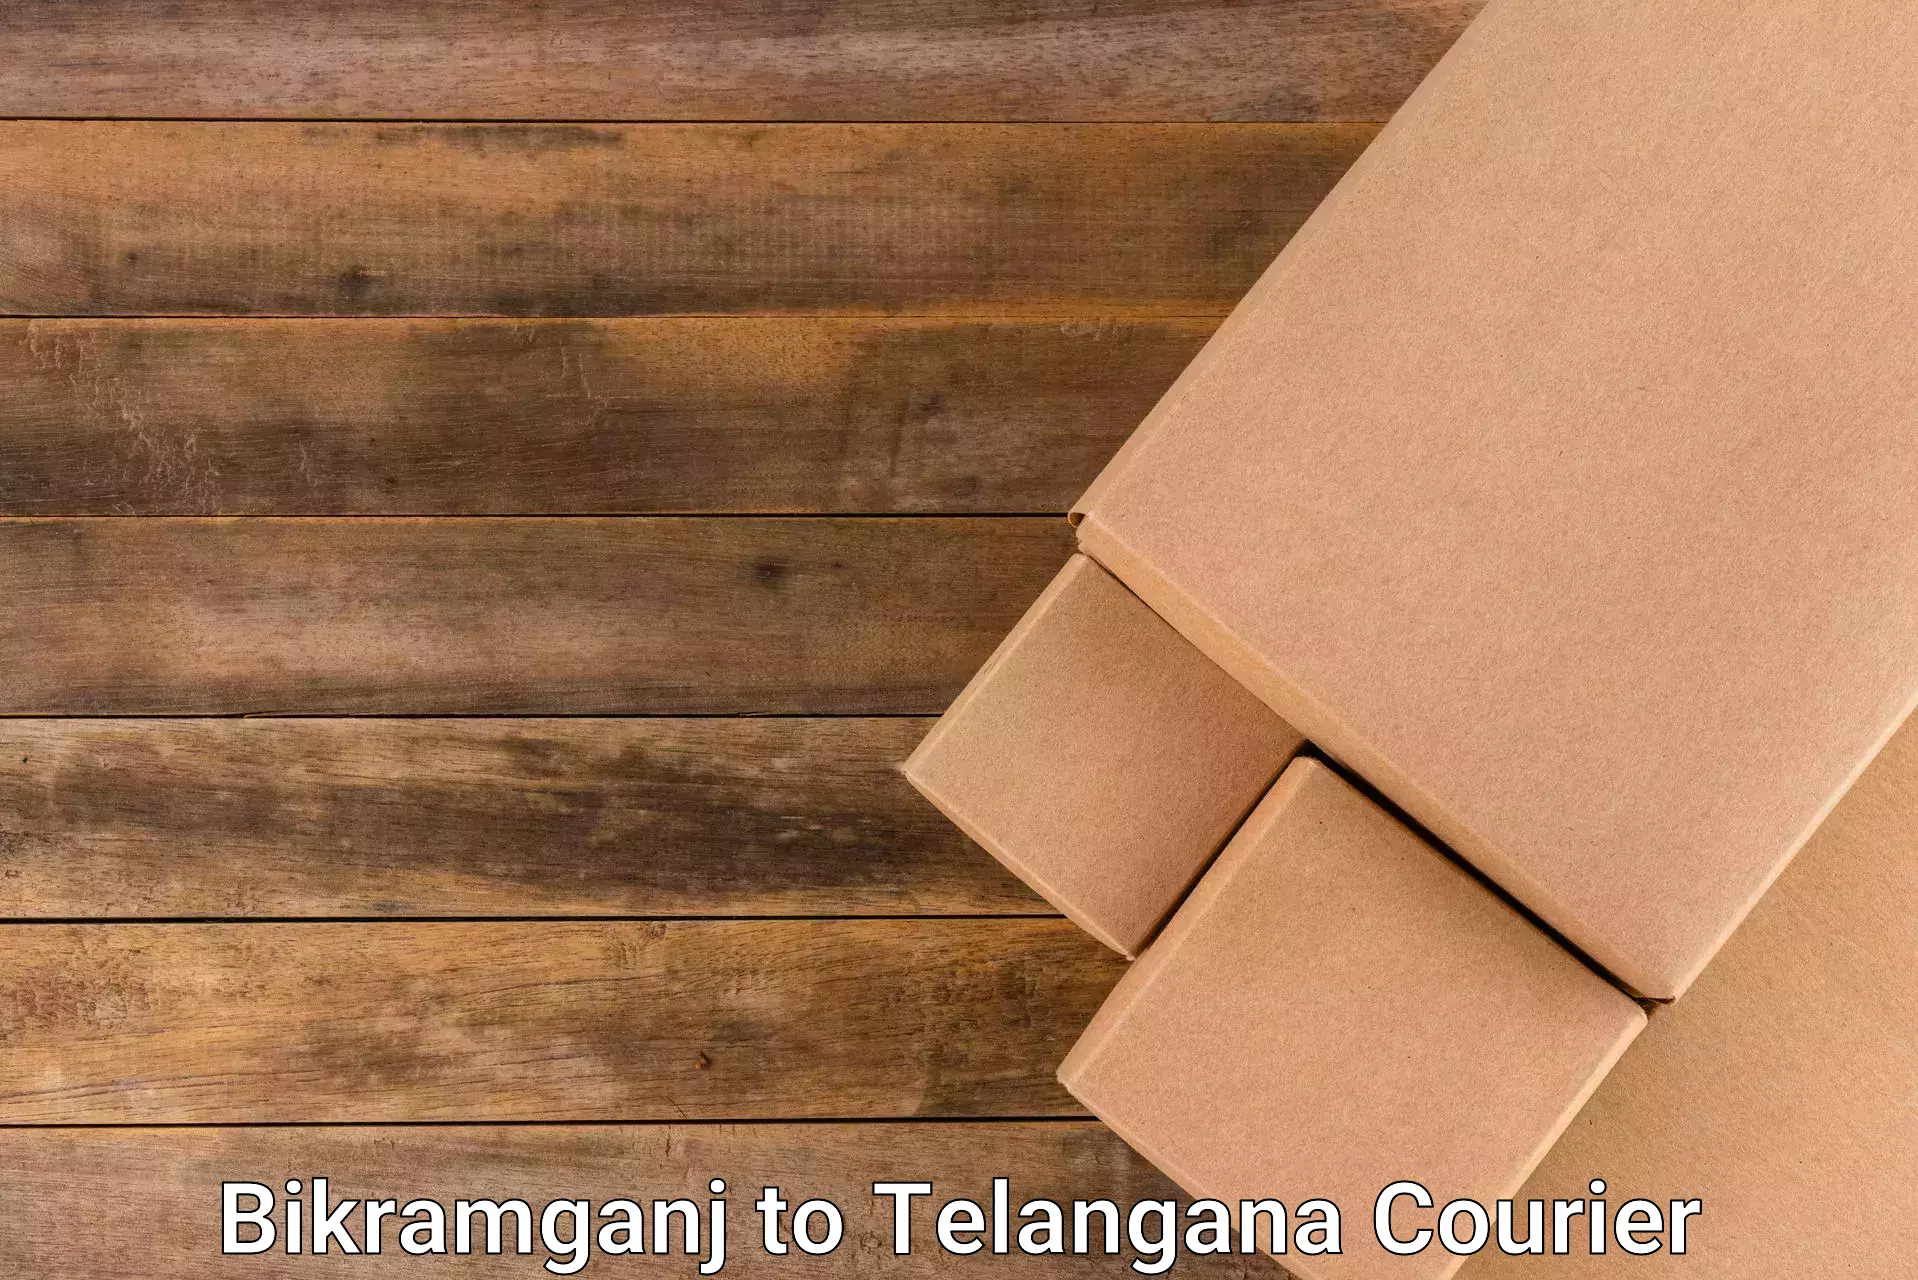 Efficient courier operations Bikramganj to Karimnagar